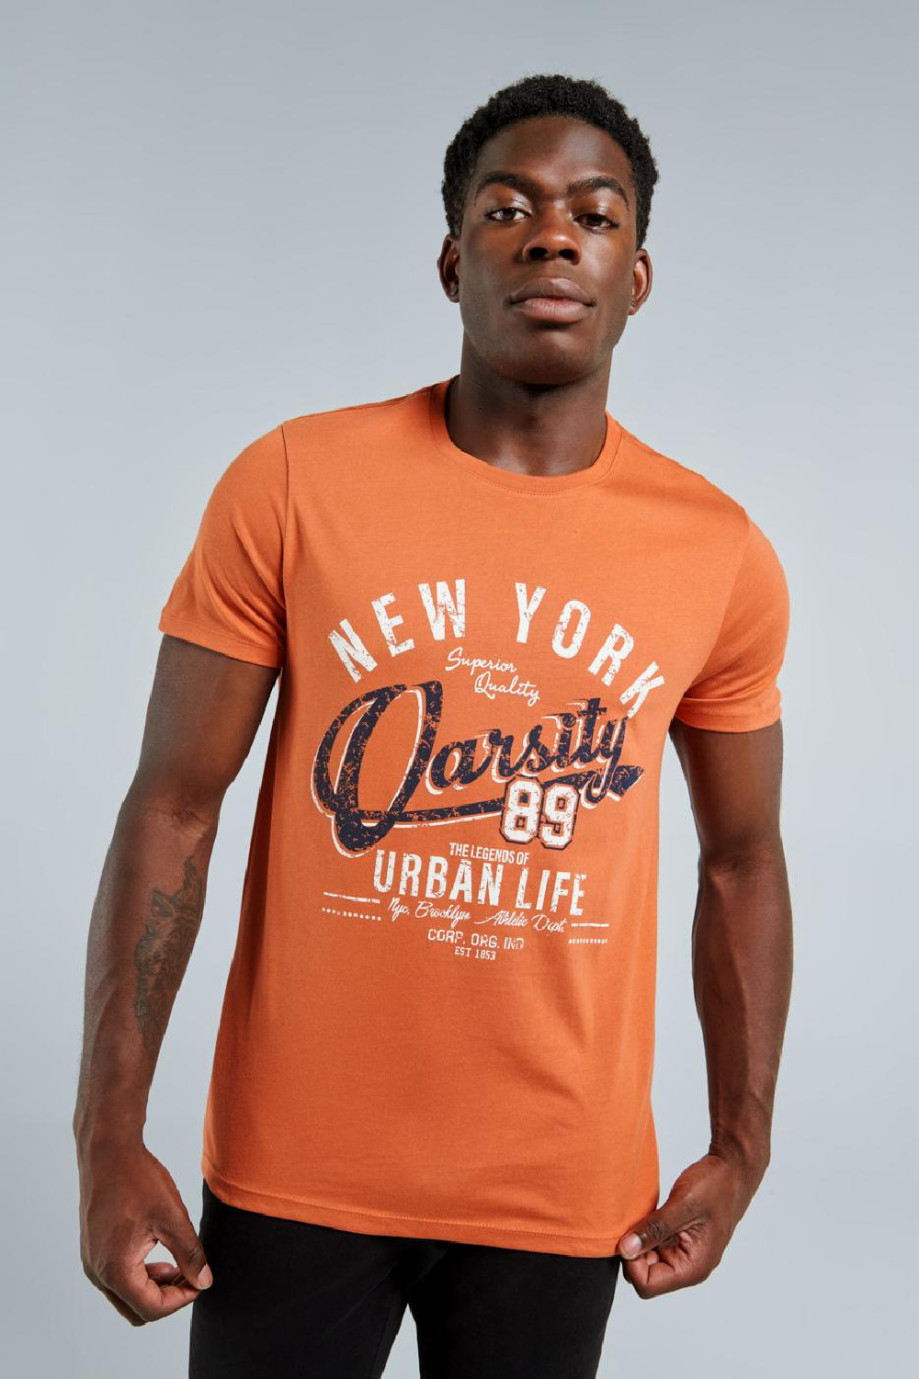 Camiseta naranja con cuello redondo y diseño college de NY